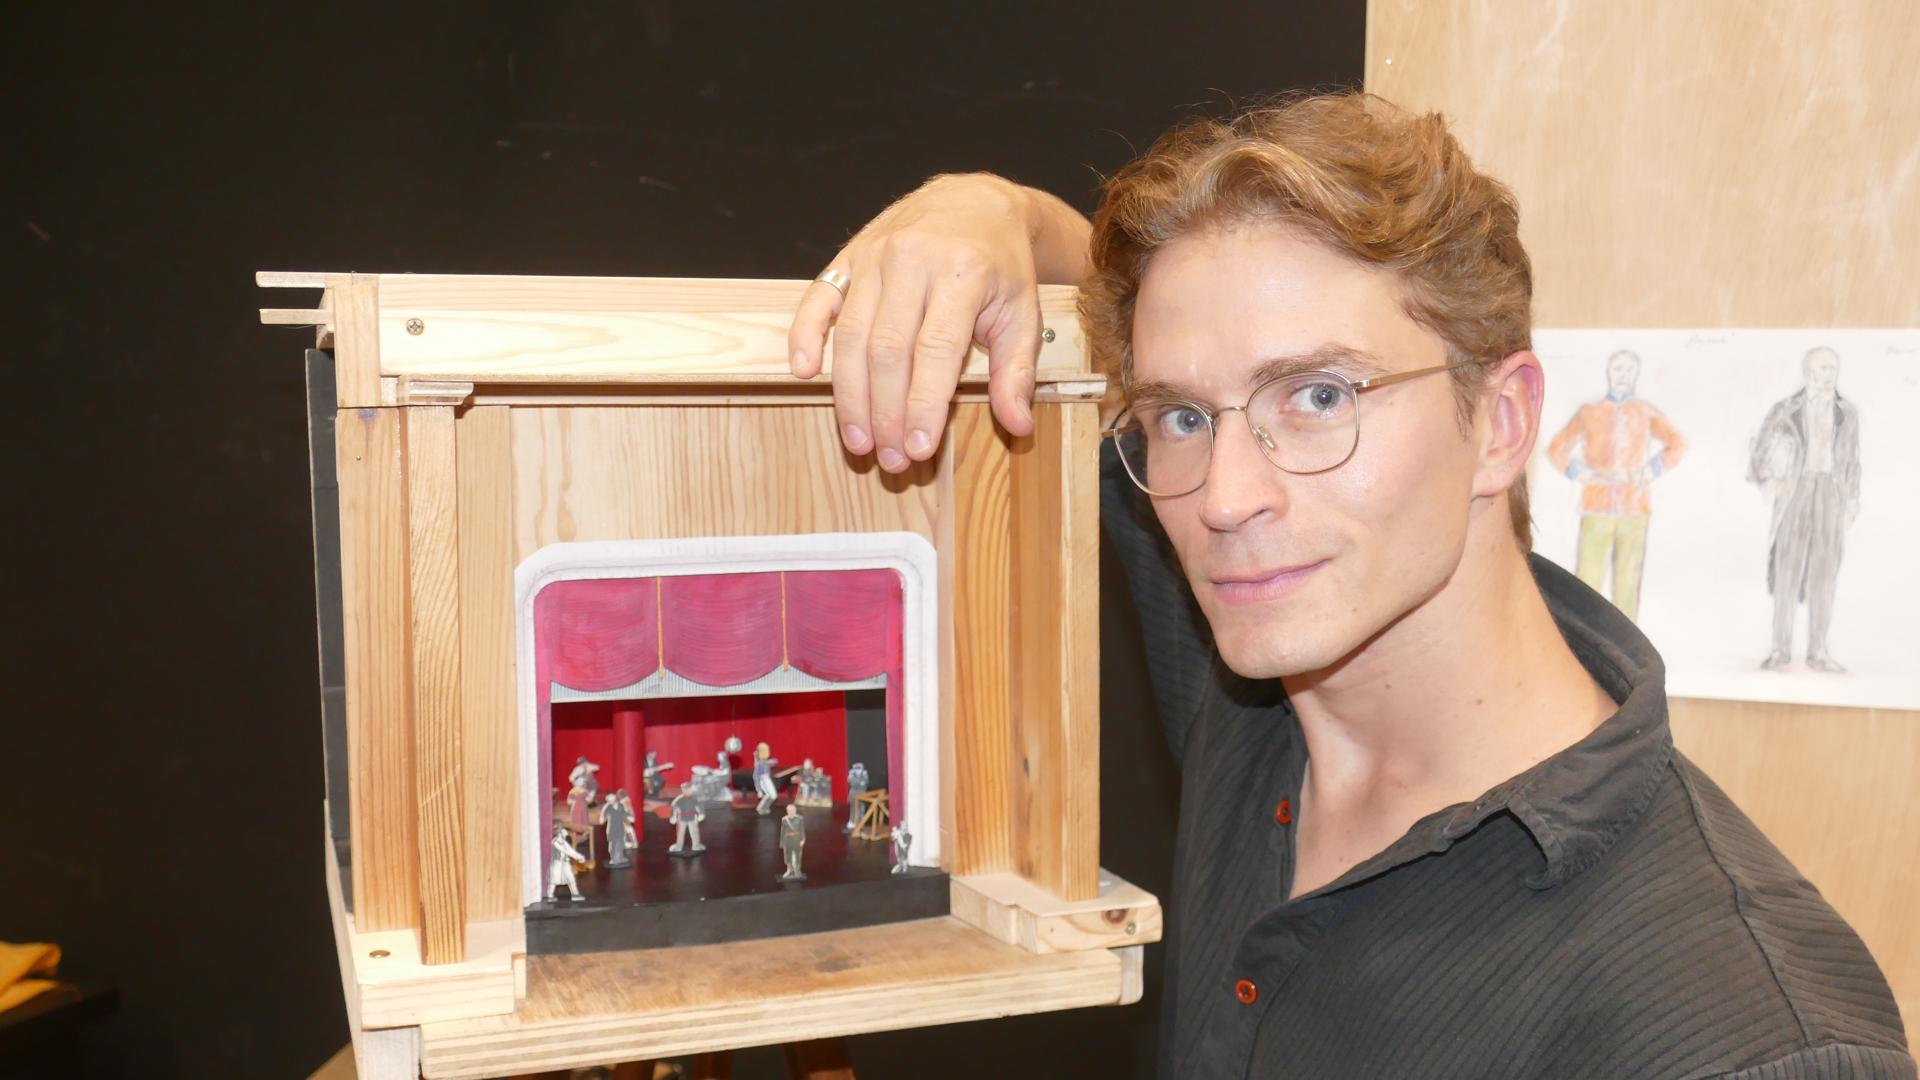 Schauspieler Lion-Russell Baumann mit dem Woyzeck-Miniatur-Bühnenbild.